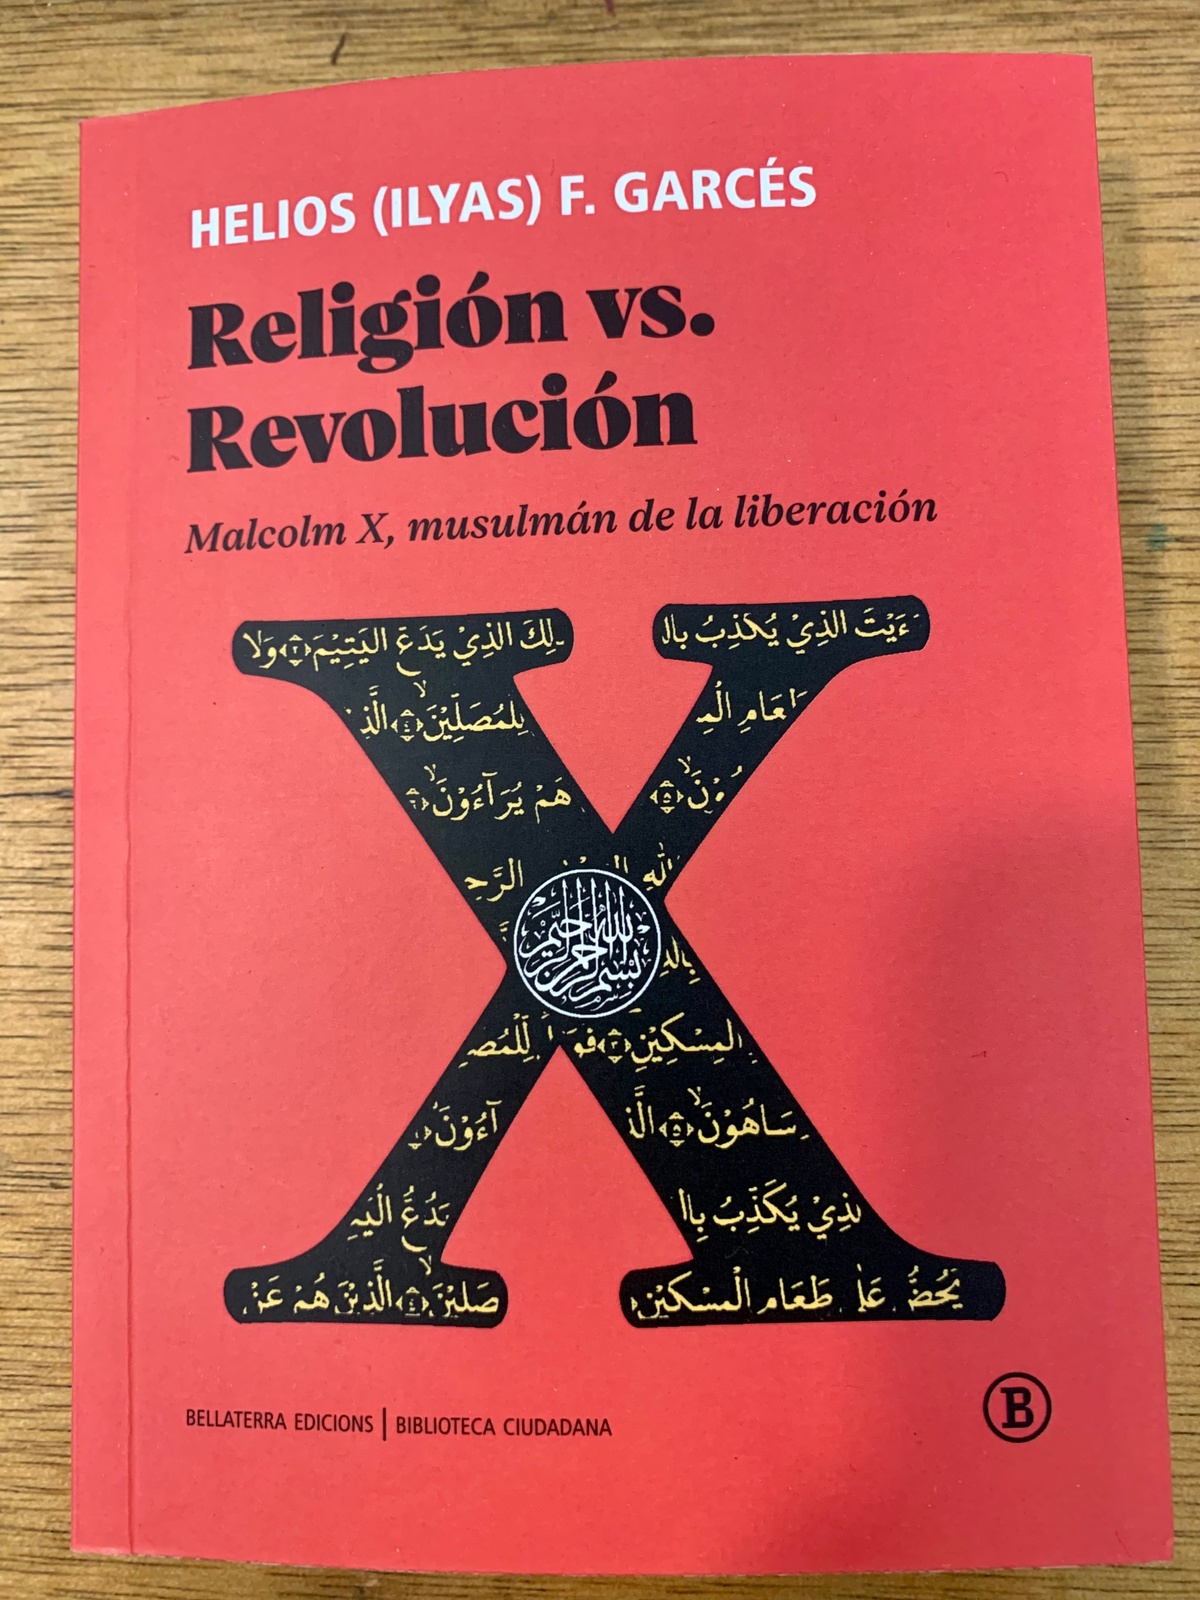 Presentació de "RELIGIÓN vs. REVOLUCIÓN. MALCOLM X, MUSULMÁN DE LA LIBERACIÓN" amb HELIOS (ILYAS) F. GARCÉS